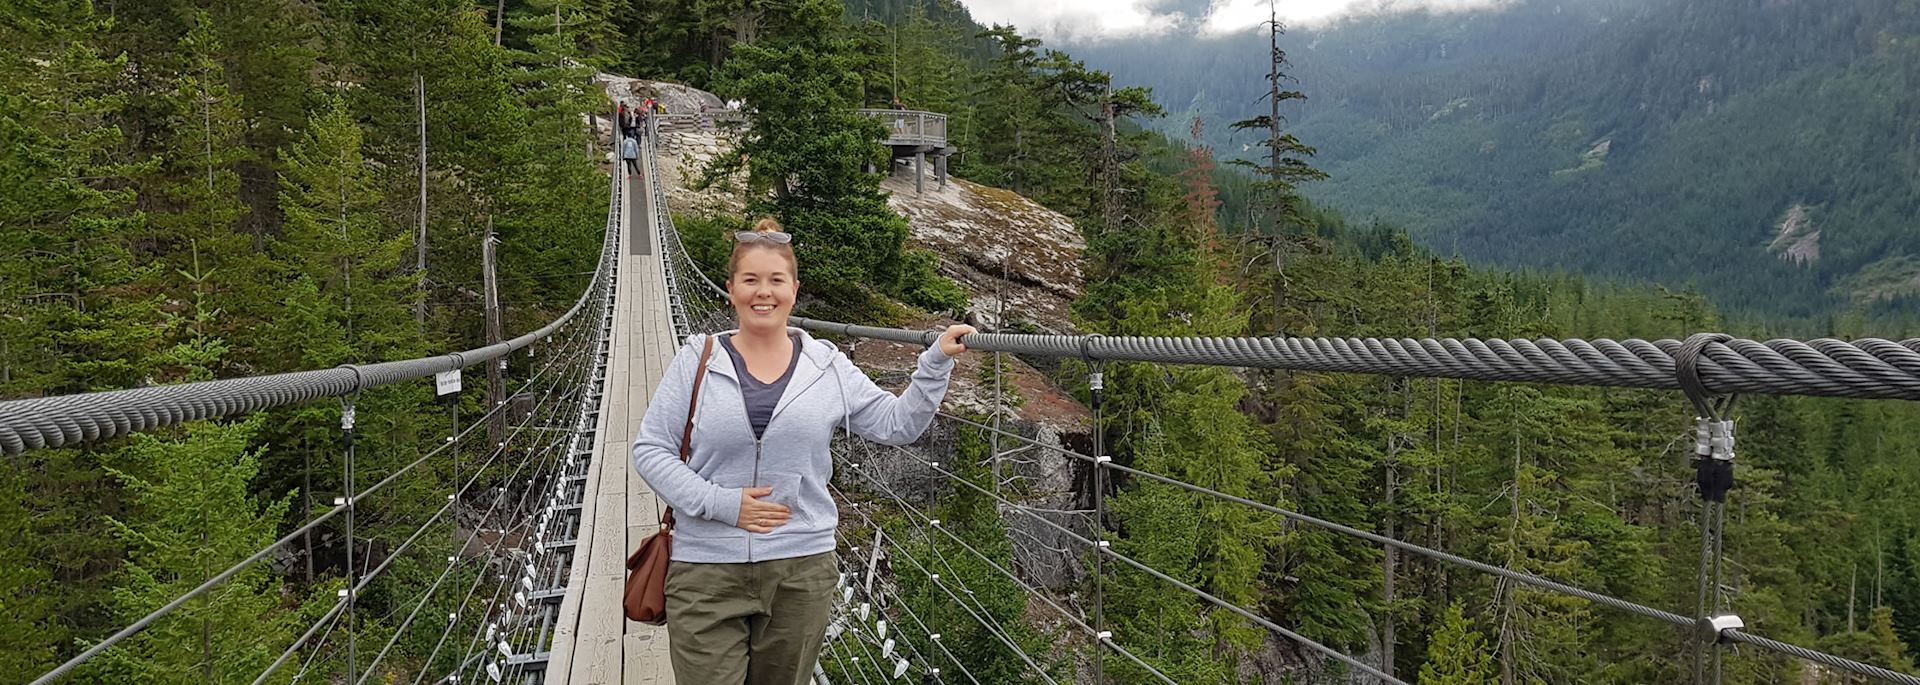 Fiona on Squamish Suspension Bridge, British Columbia